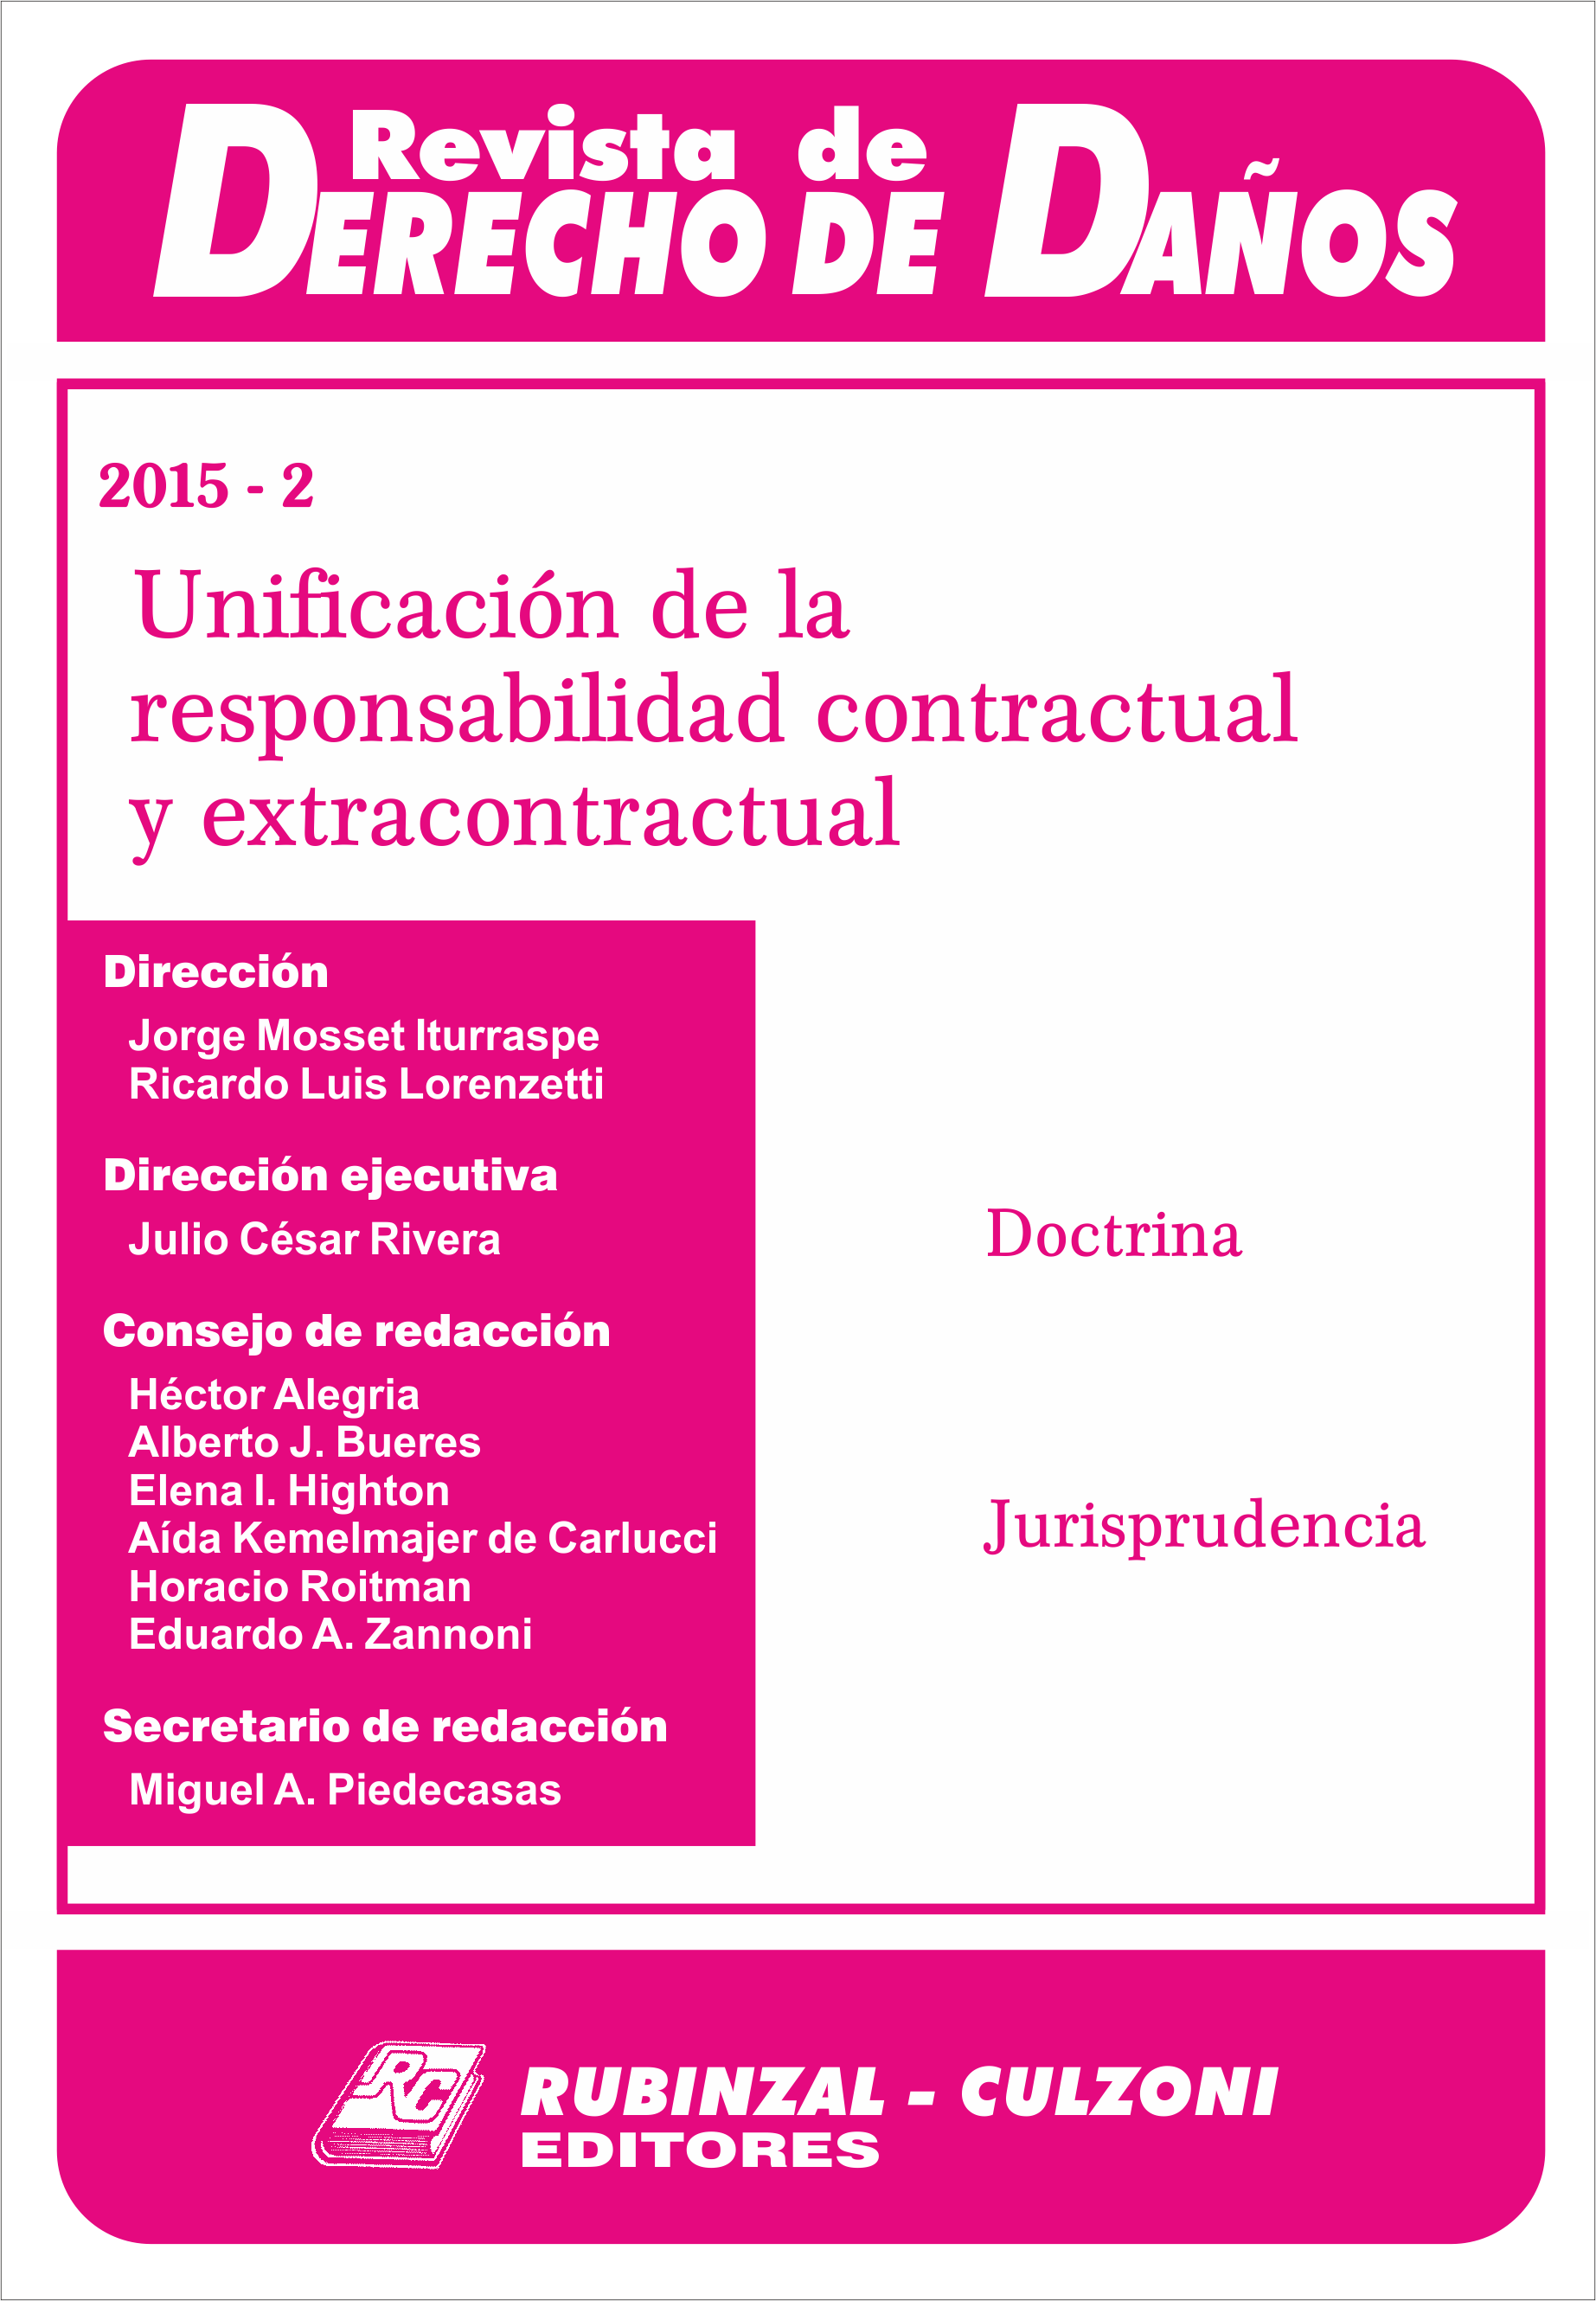 Revista de Derecho de Daños - Unificación de la responsabilidad contractual y extracontractual